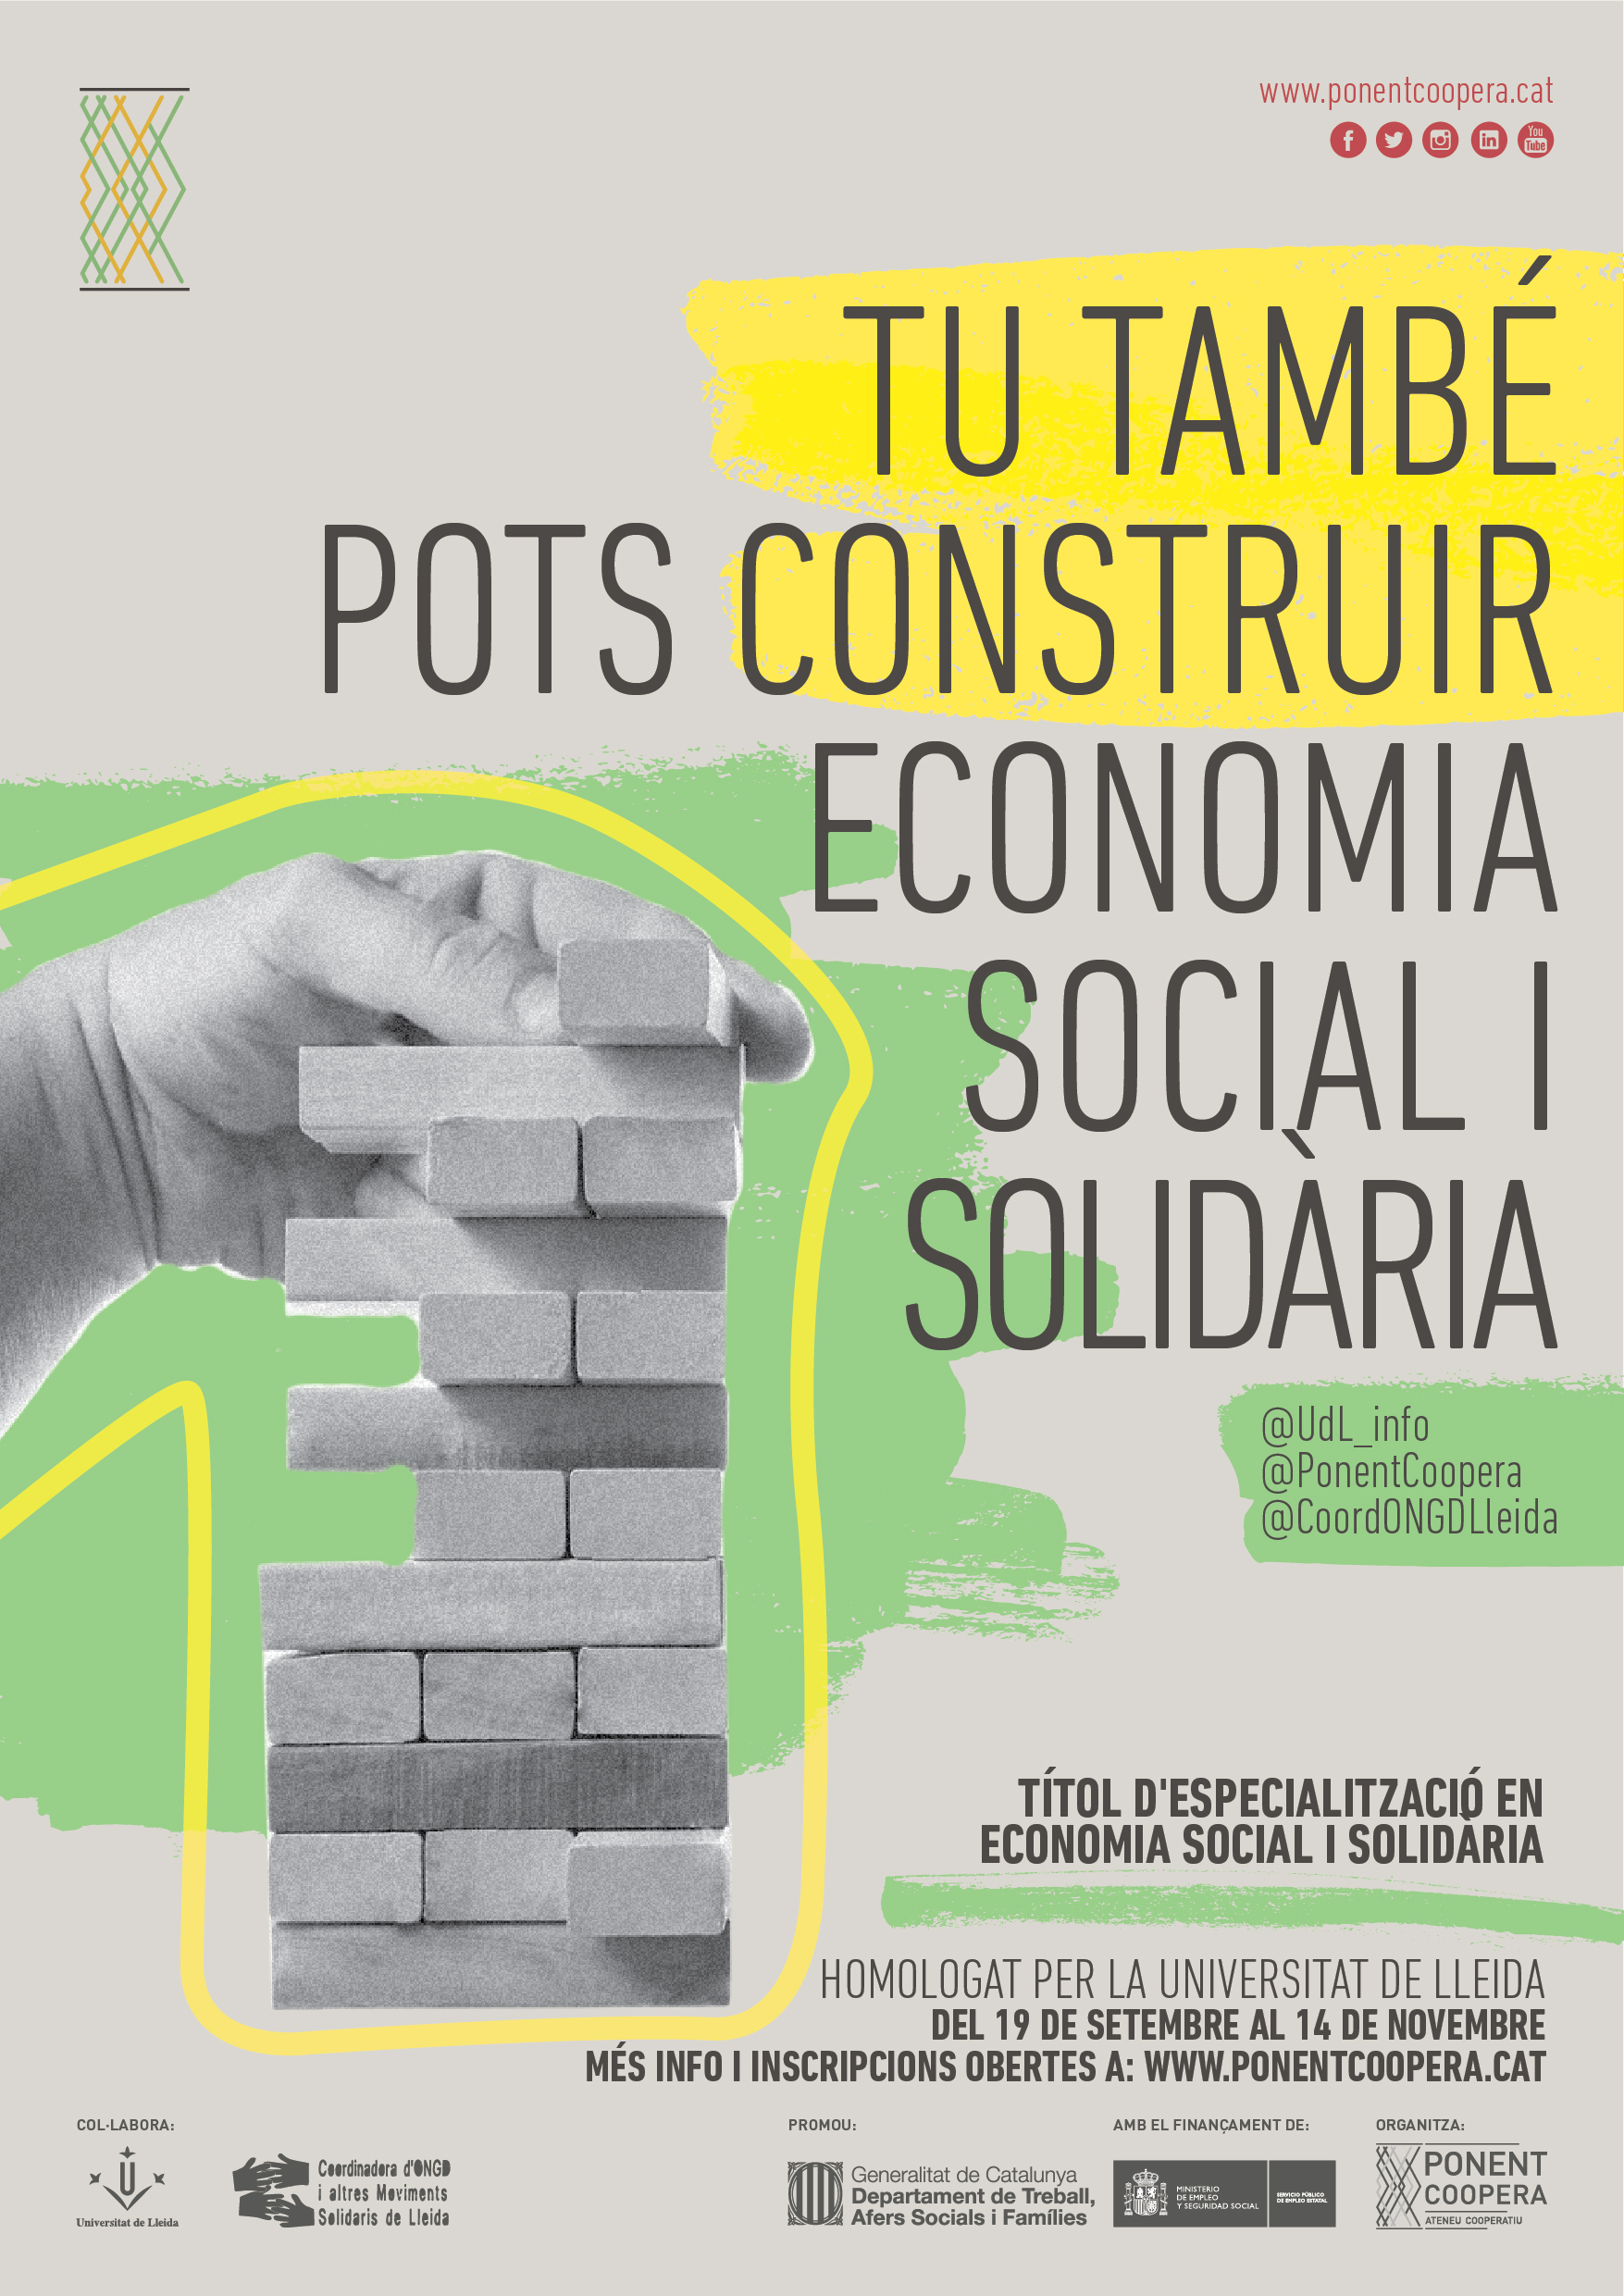 Títol d'Especialització en Economia Social i Solidària